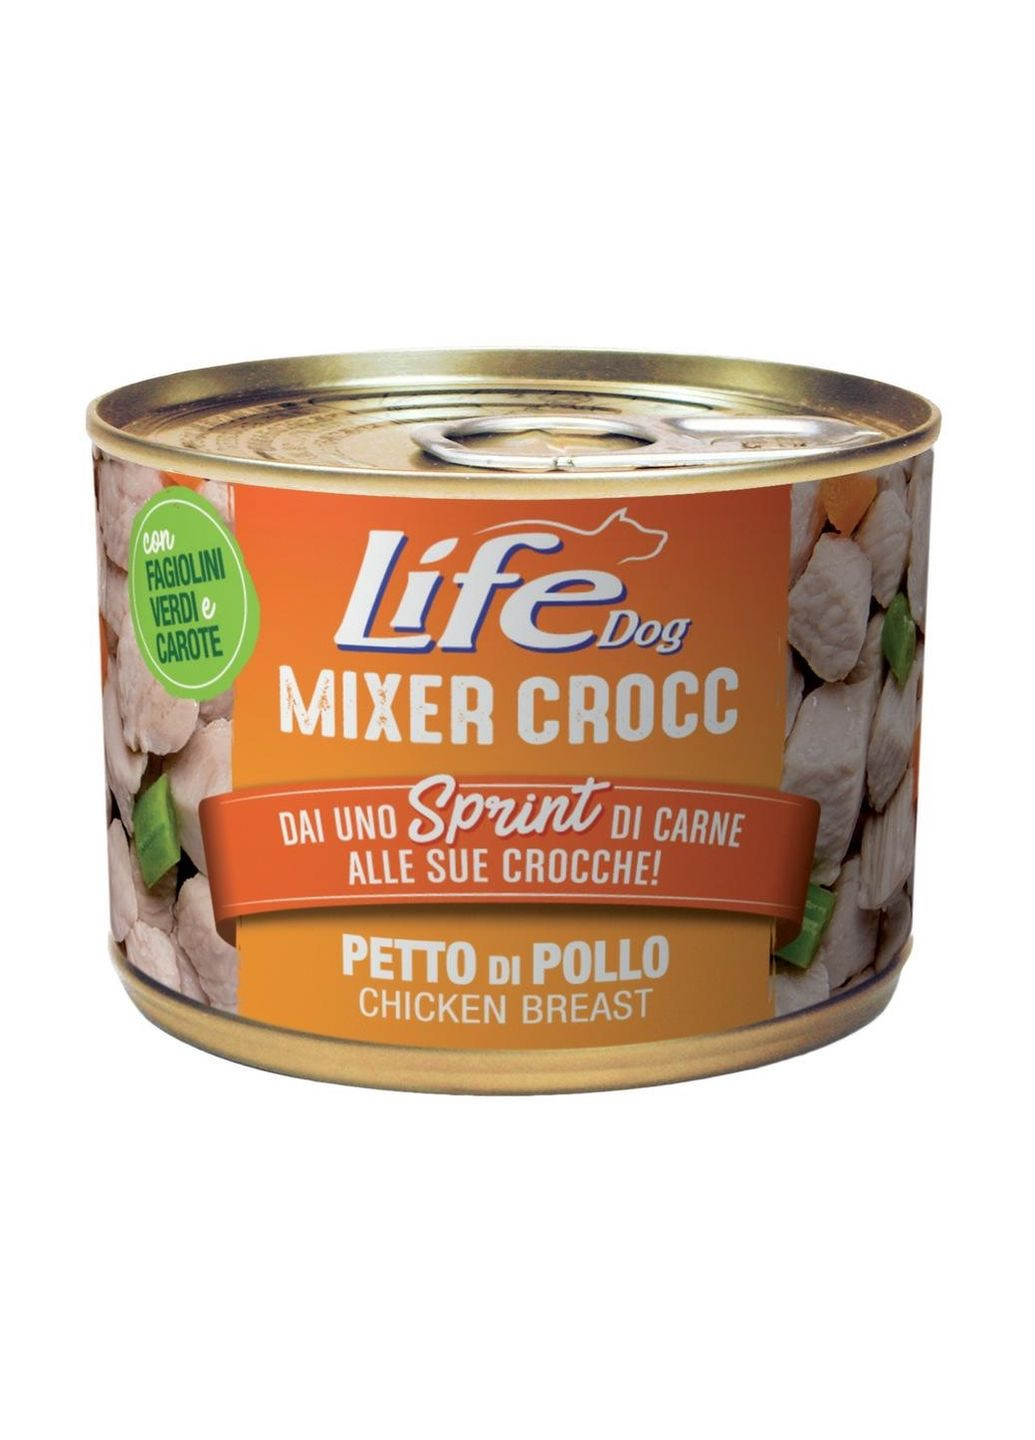 Консерва для взрослых собак Life Dog Mixer Crocc Petto di Pollo куриная грудка 150 г LIfeDog (266274692)